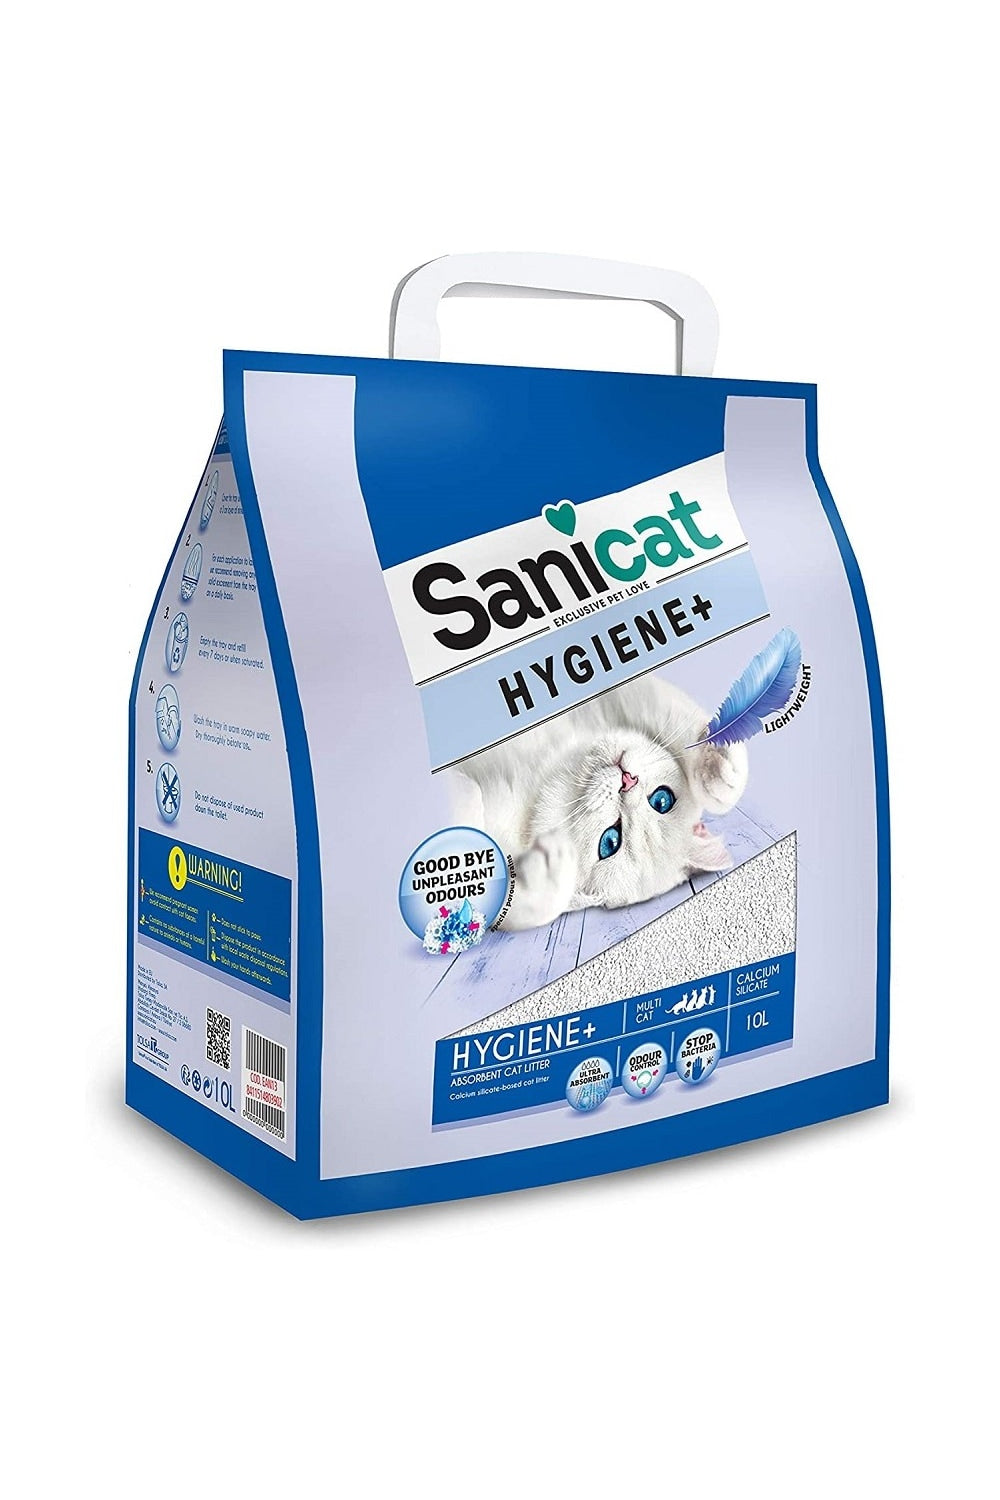 Sanicat Hygiene+ Cat Litter (White) (17.6pint)